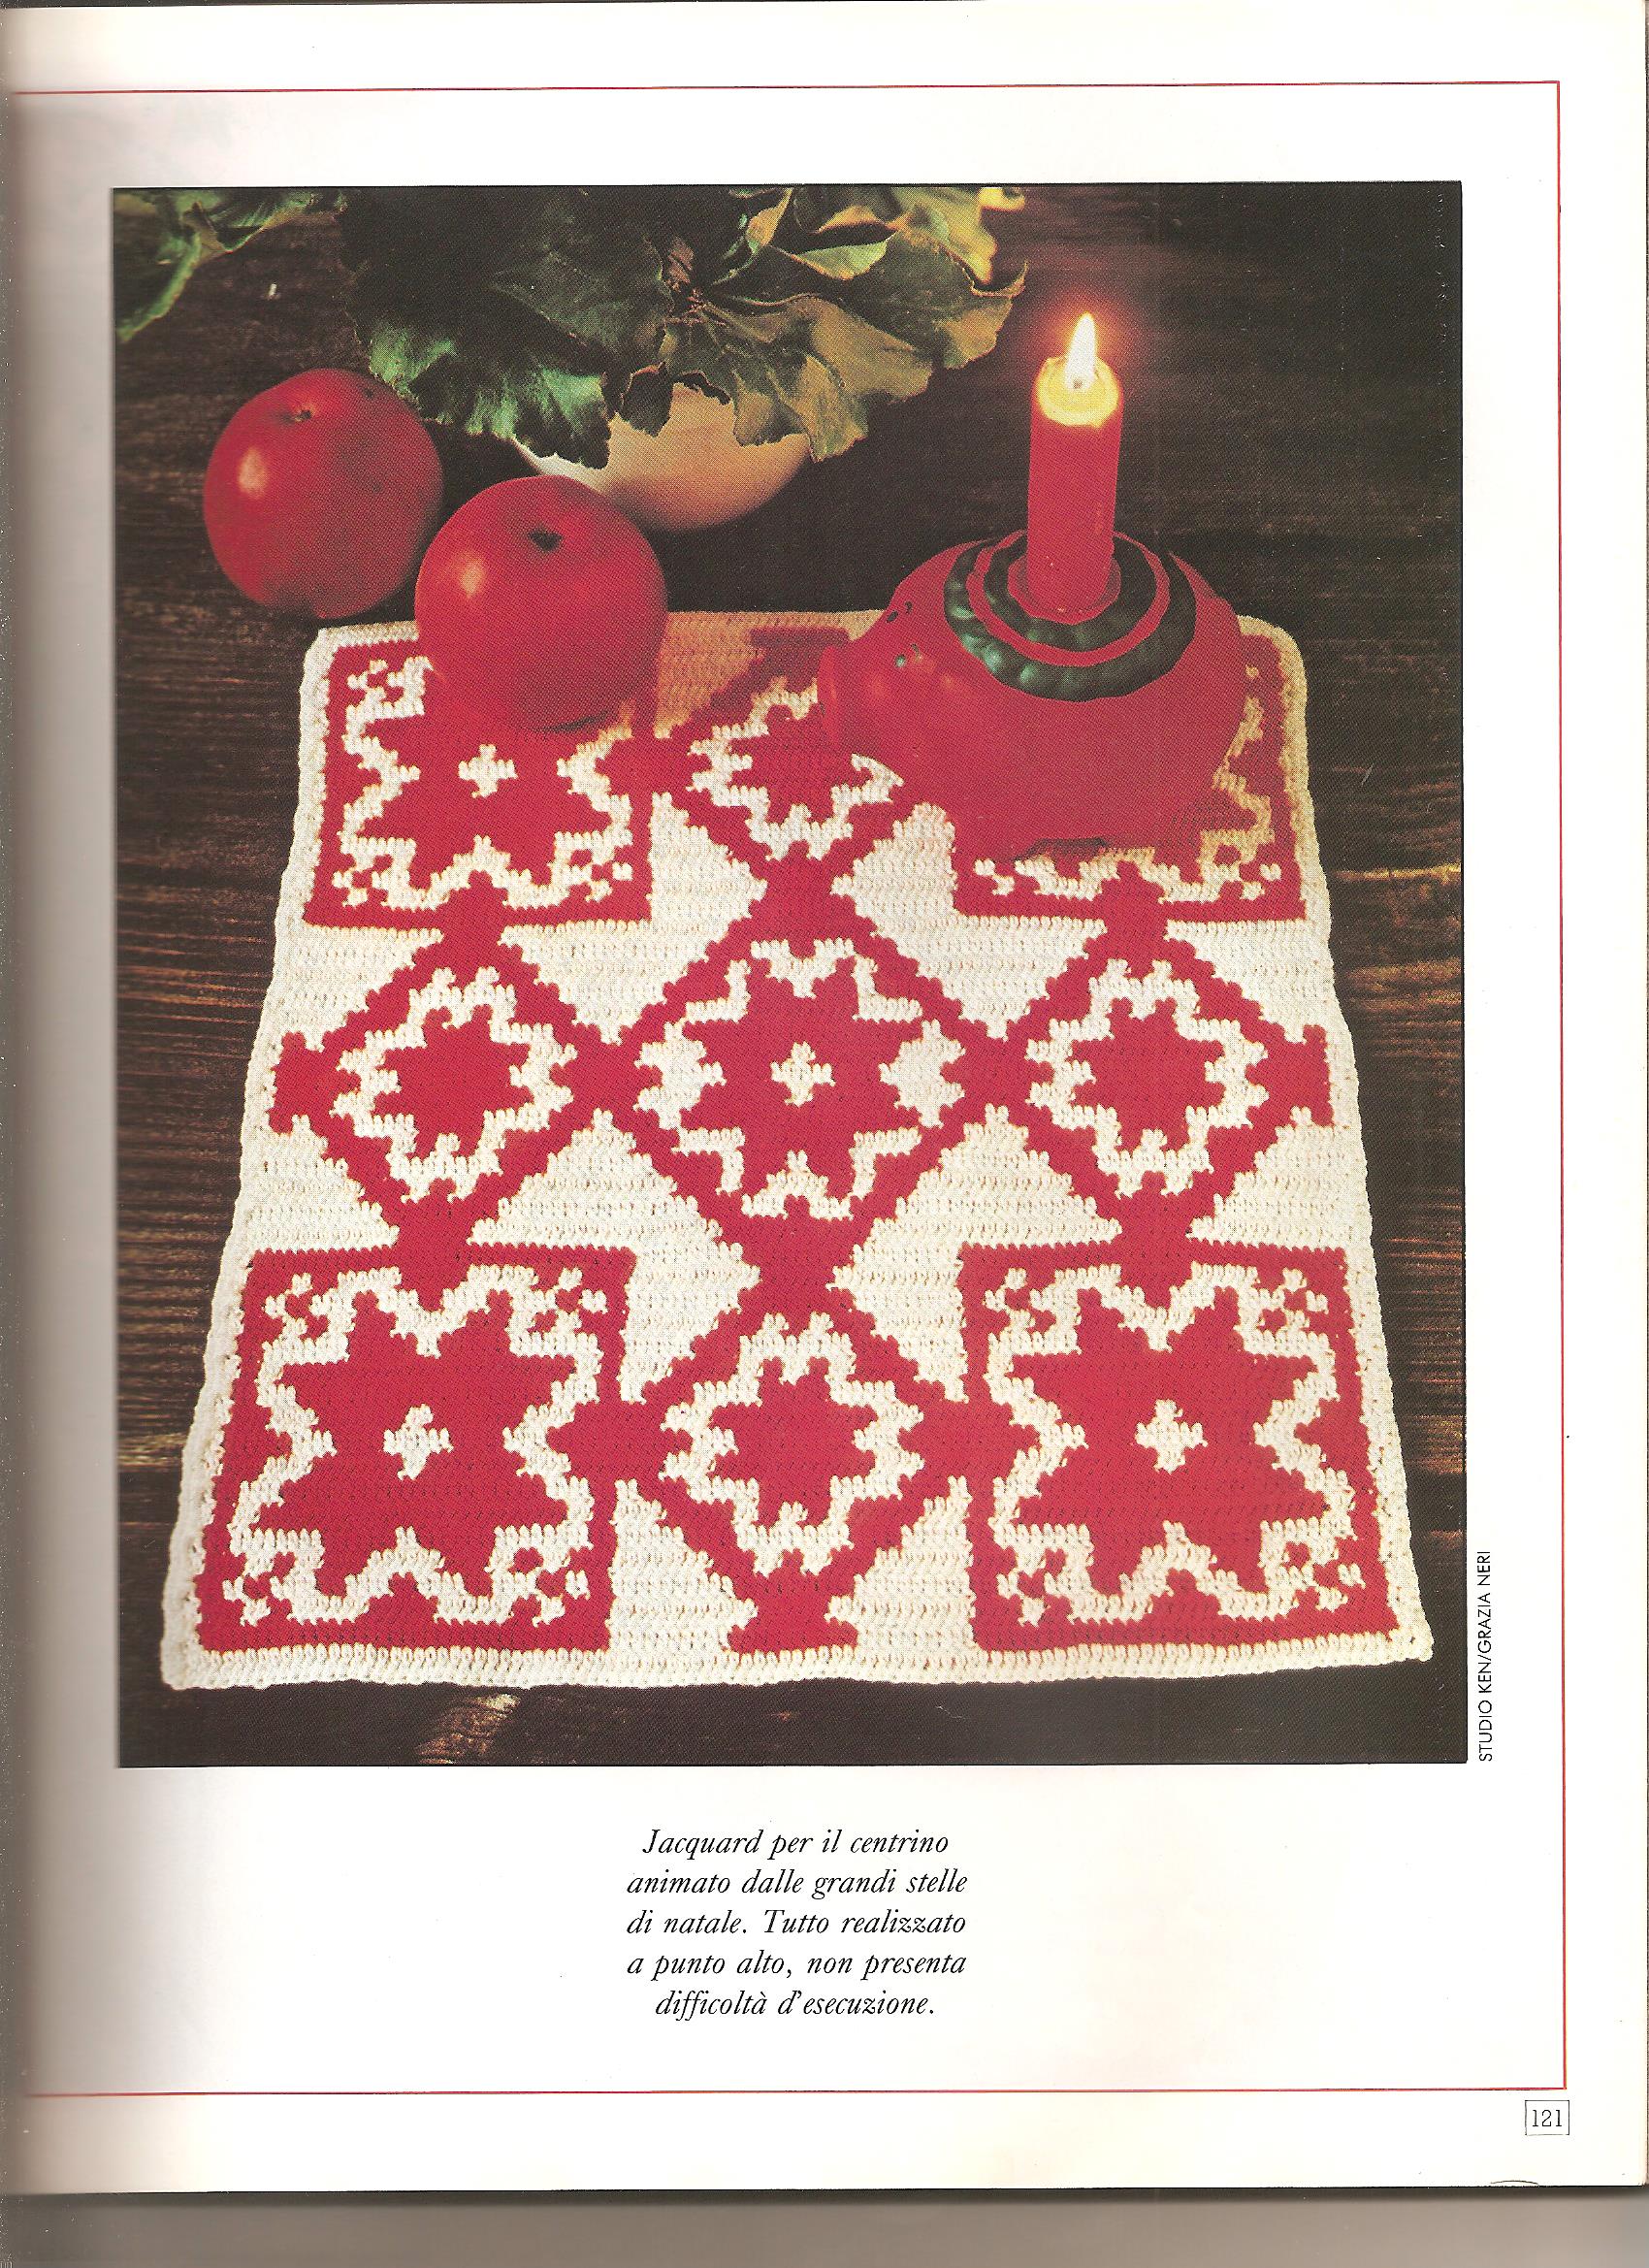 rectangular jacquard crochet doily (1)